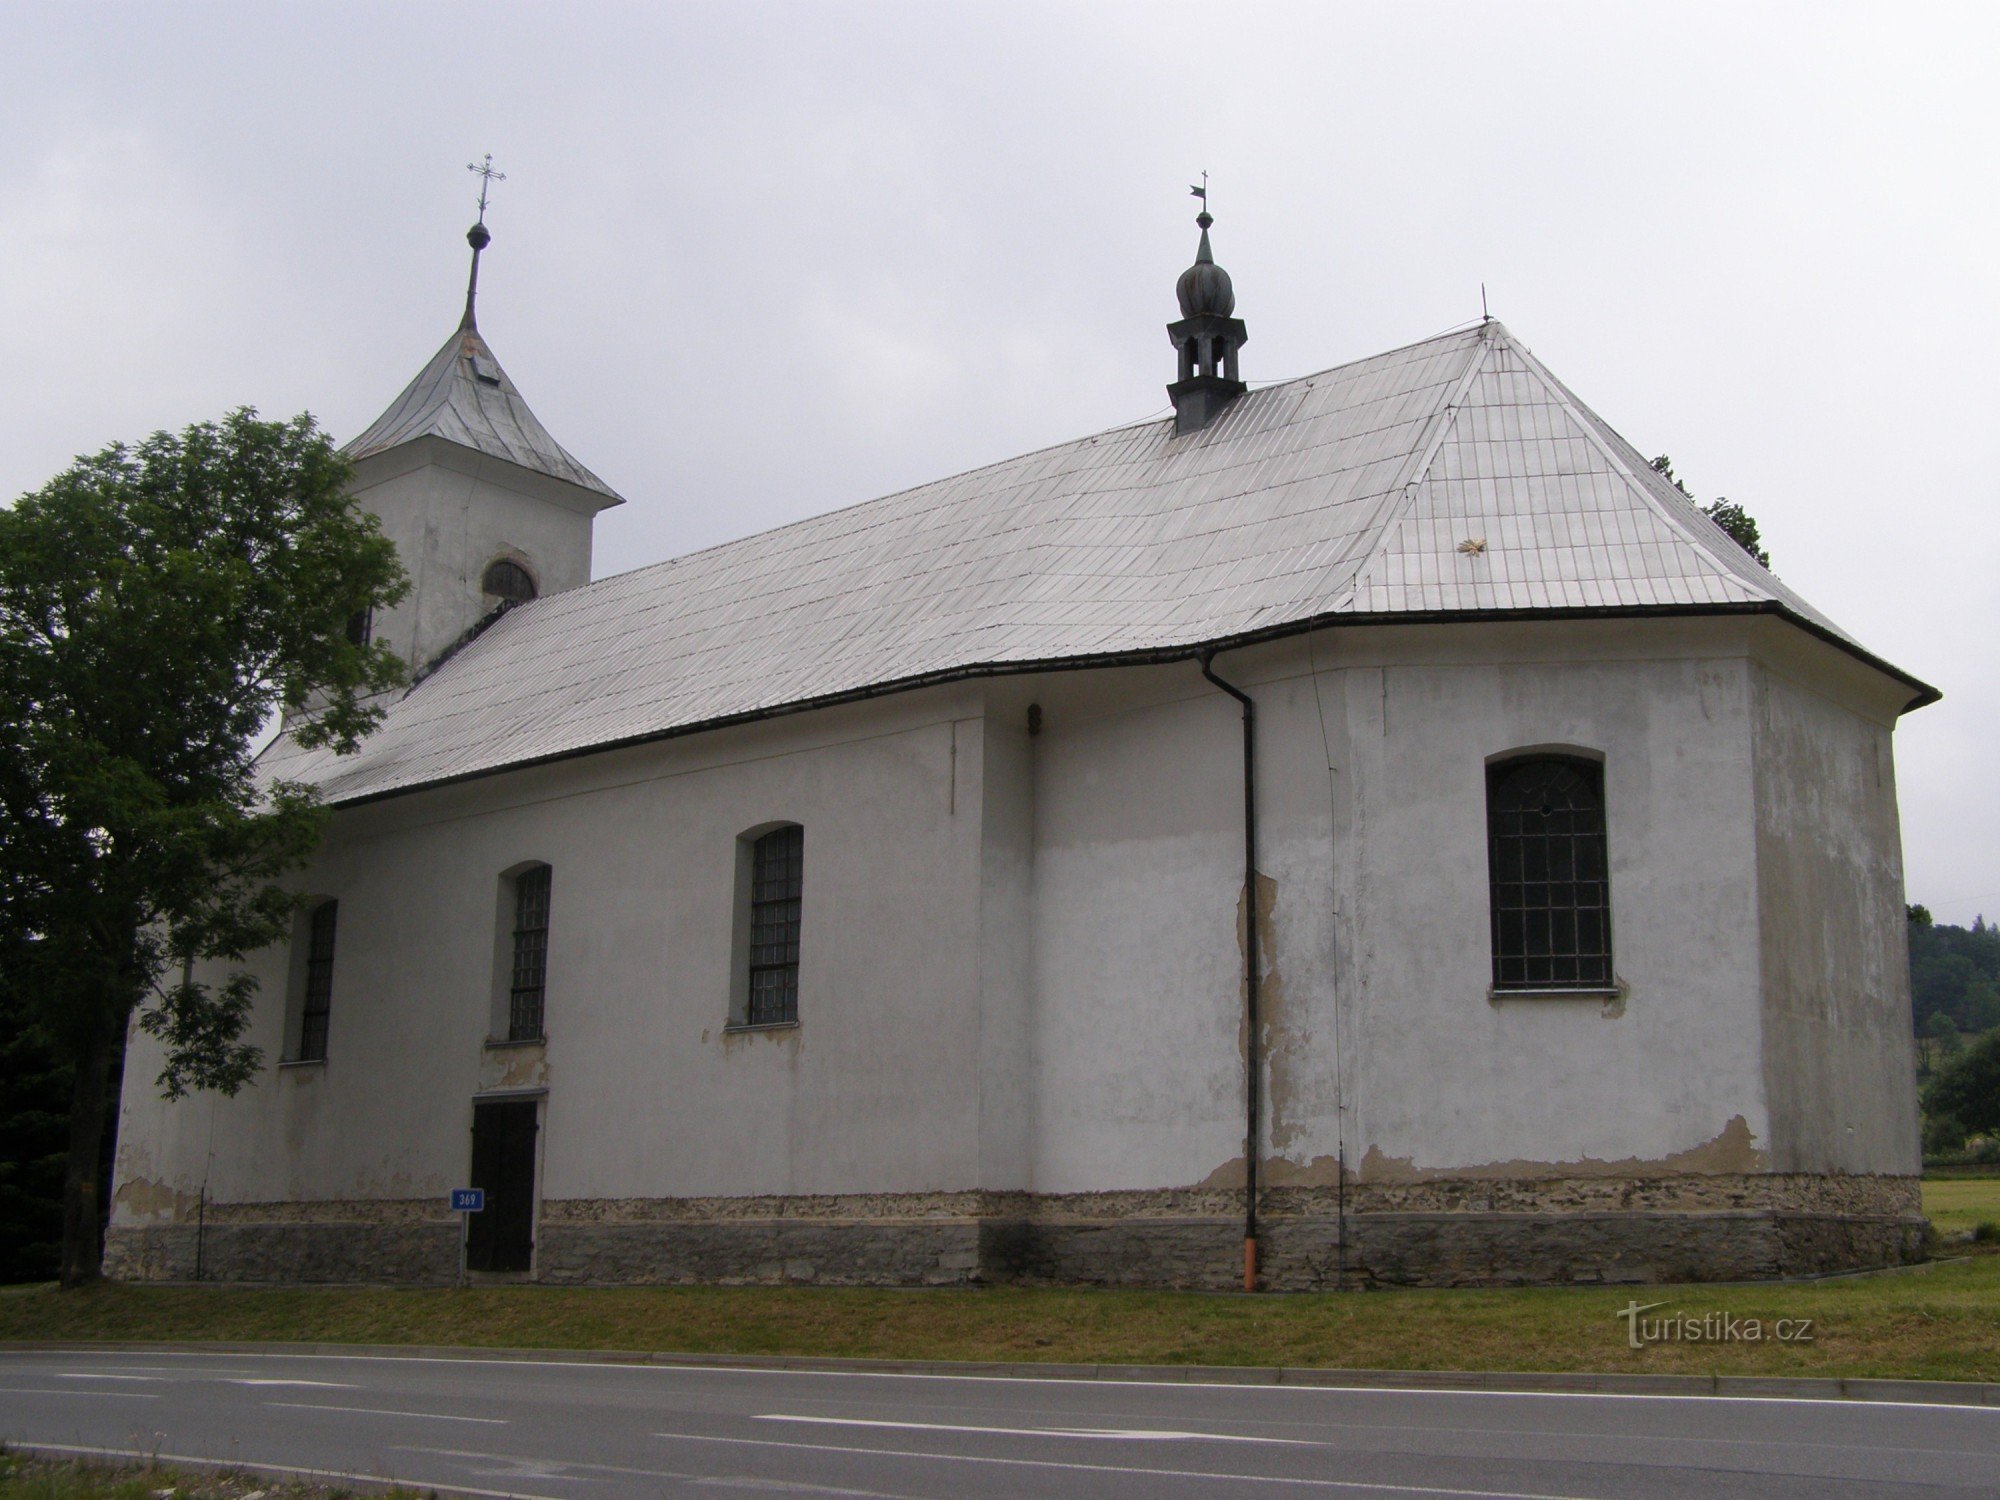 Ostružná - Iglesia de los Reyes Magos